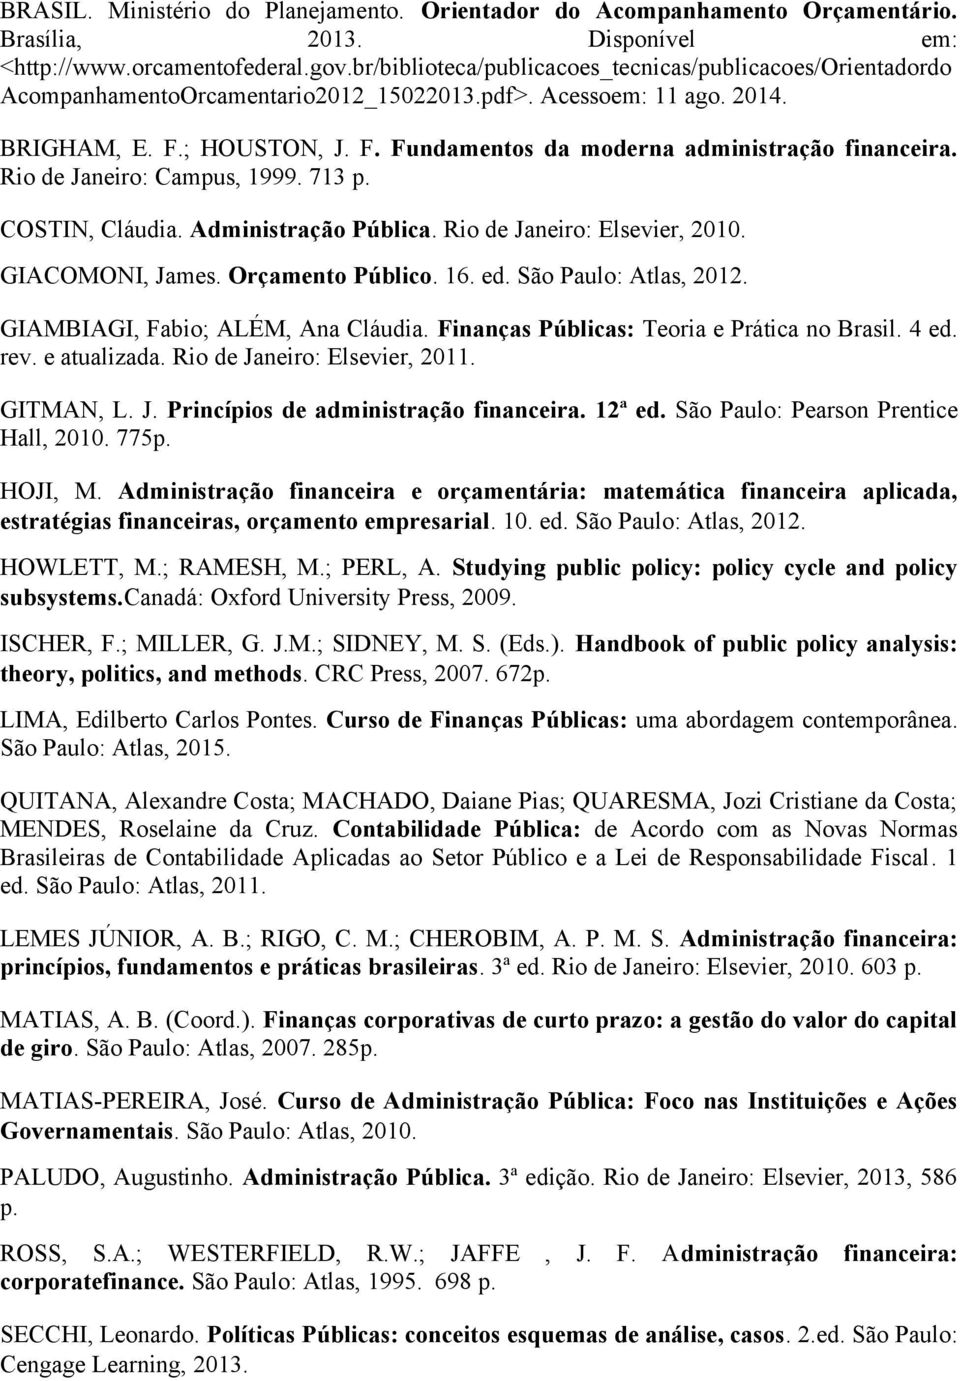 Rio de Janeiro: Campus, 1999. 713 p. COSTIN, Cláudia. Administração Pública. Rio de Janeiro: Elsevier, 2010. GIACOMONI, James. Orçamento Público. 16. ed. São Paulo: Atlas, 2012.